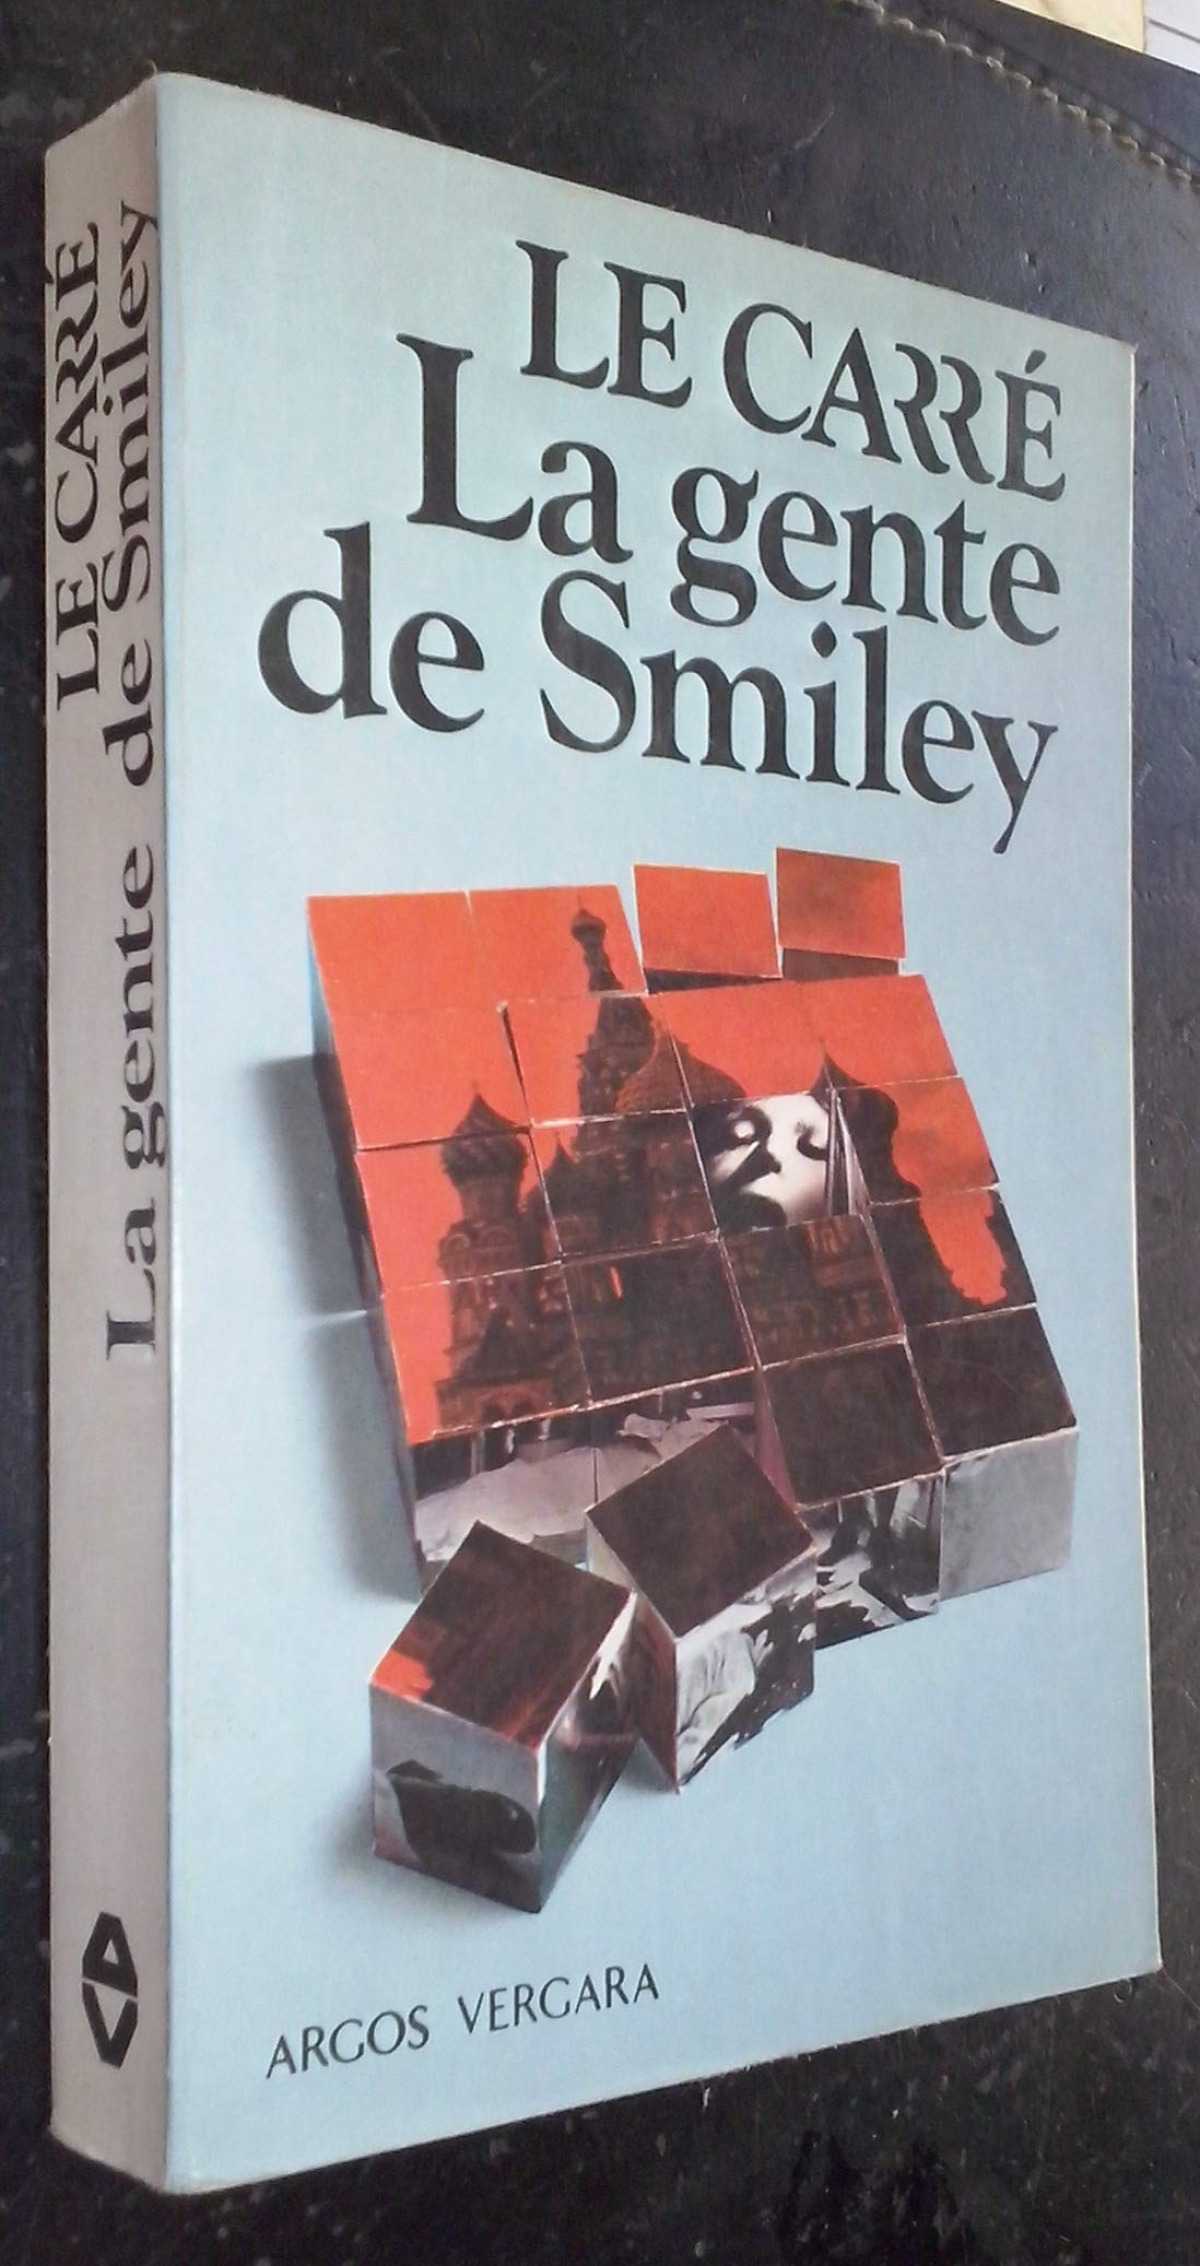 La gente de smiley - Le Carre, John